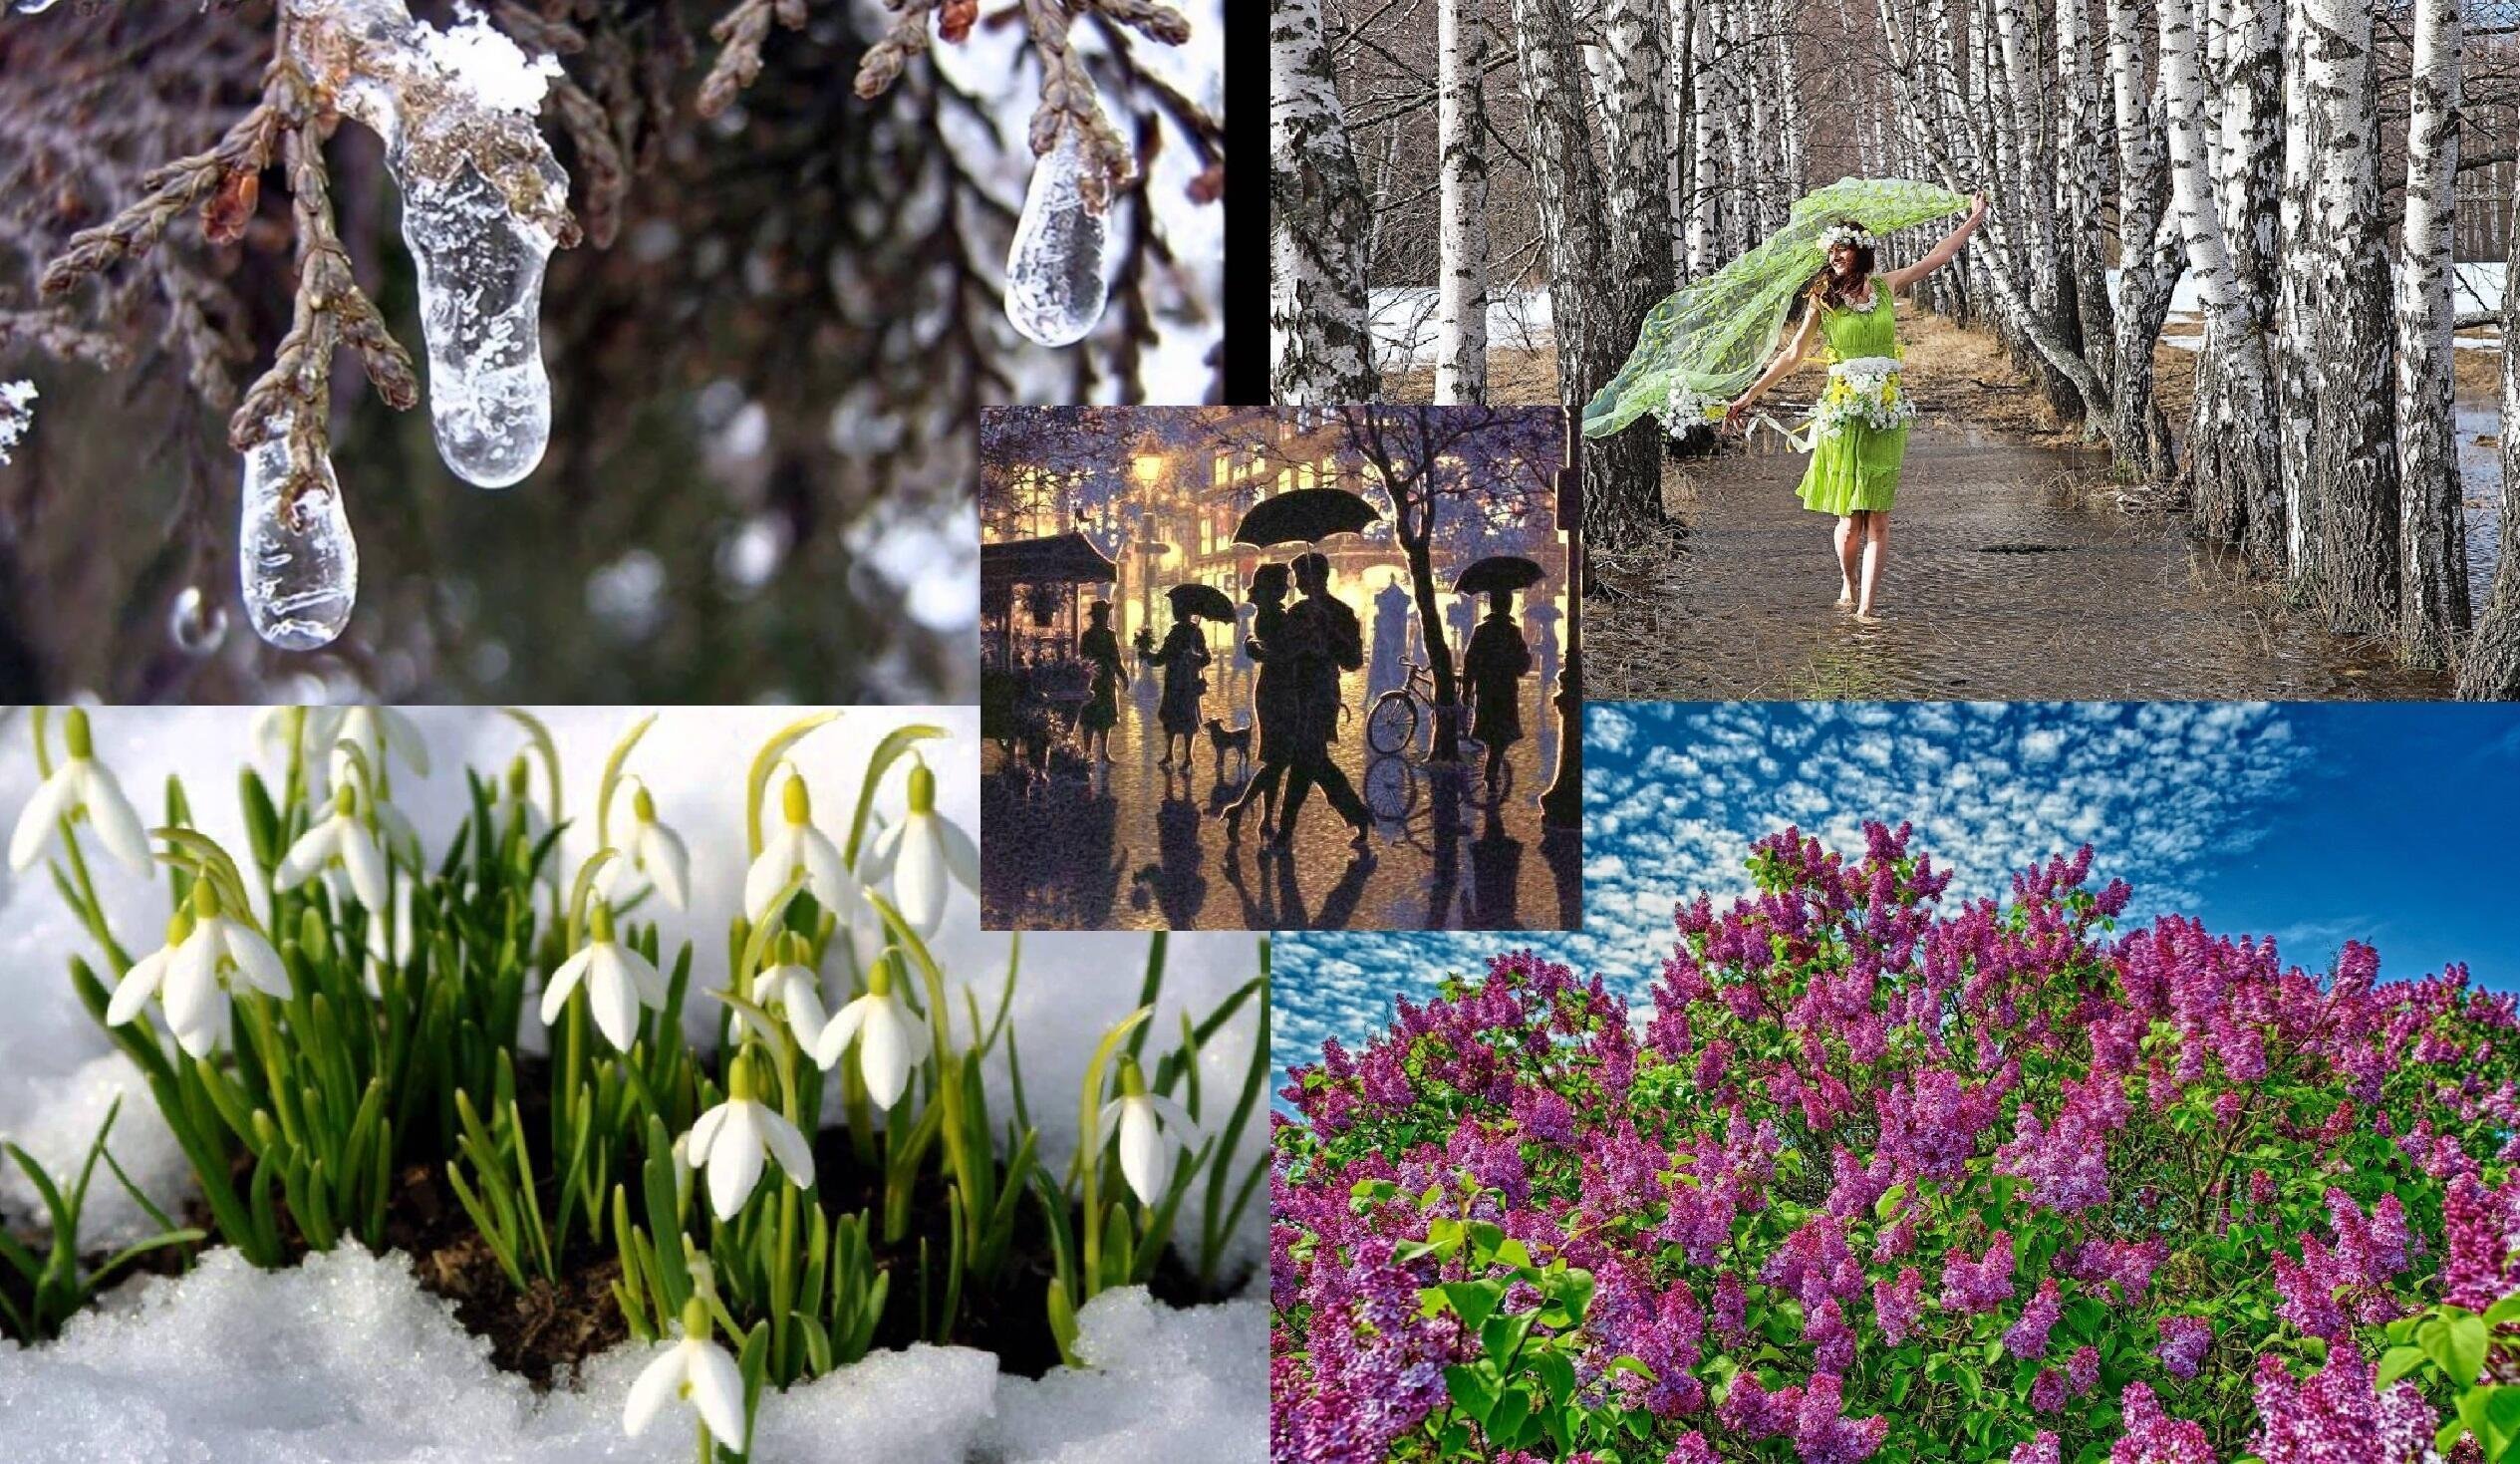 Название весенних месяцев связанных с живой природой. “Пробуждение весны” Ведекинда. Природа оживает весной. Весенняя тема.